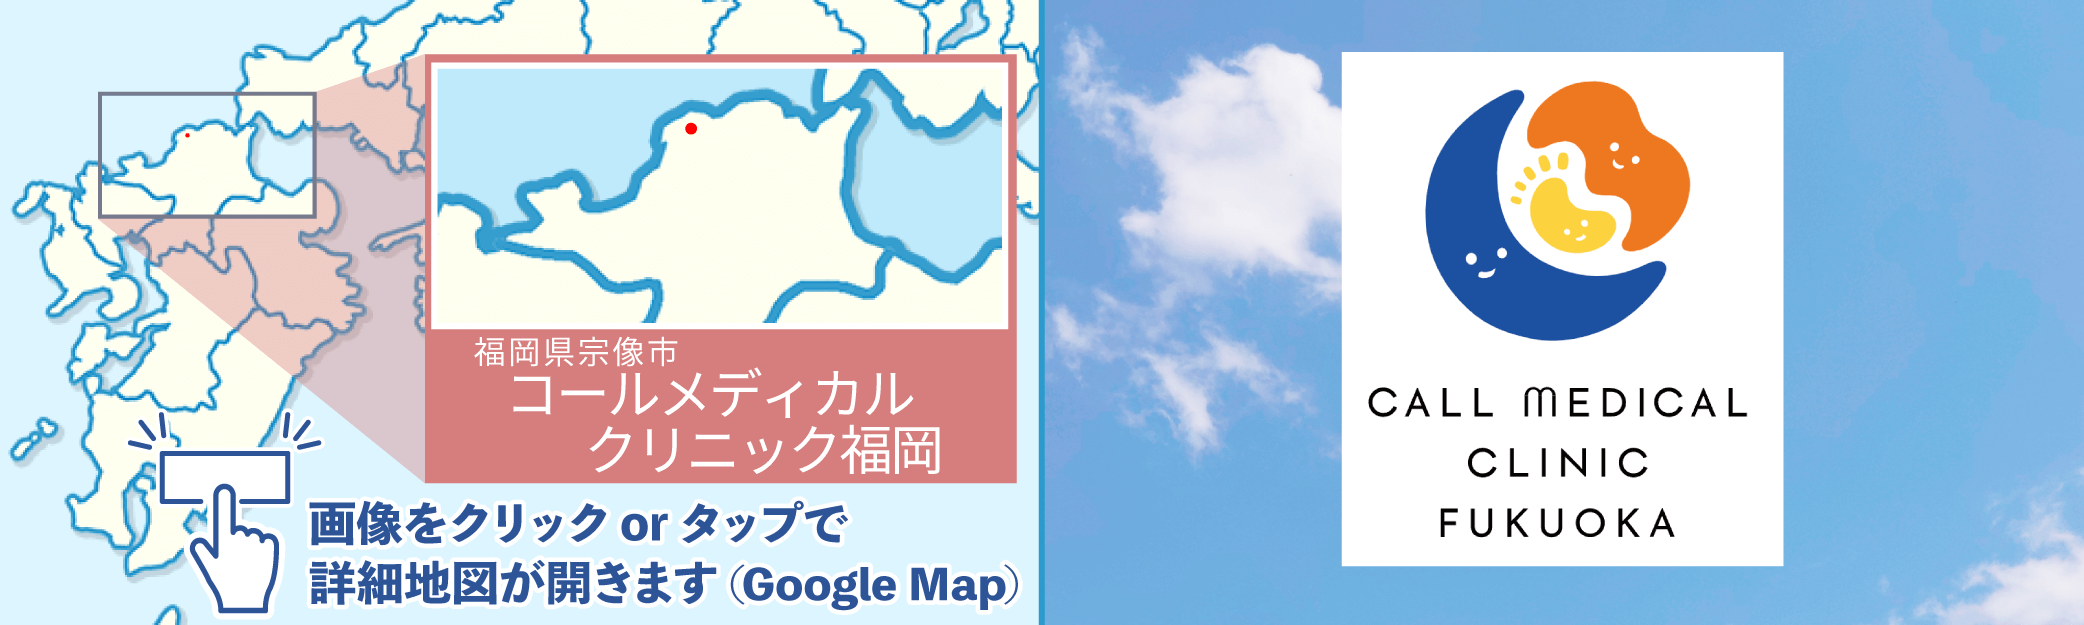 コールメディカルクリニック福岡地図・外観写真※クリックでGoogleMapが開きます